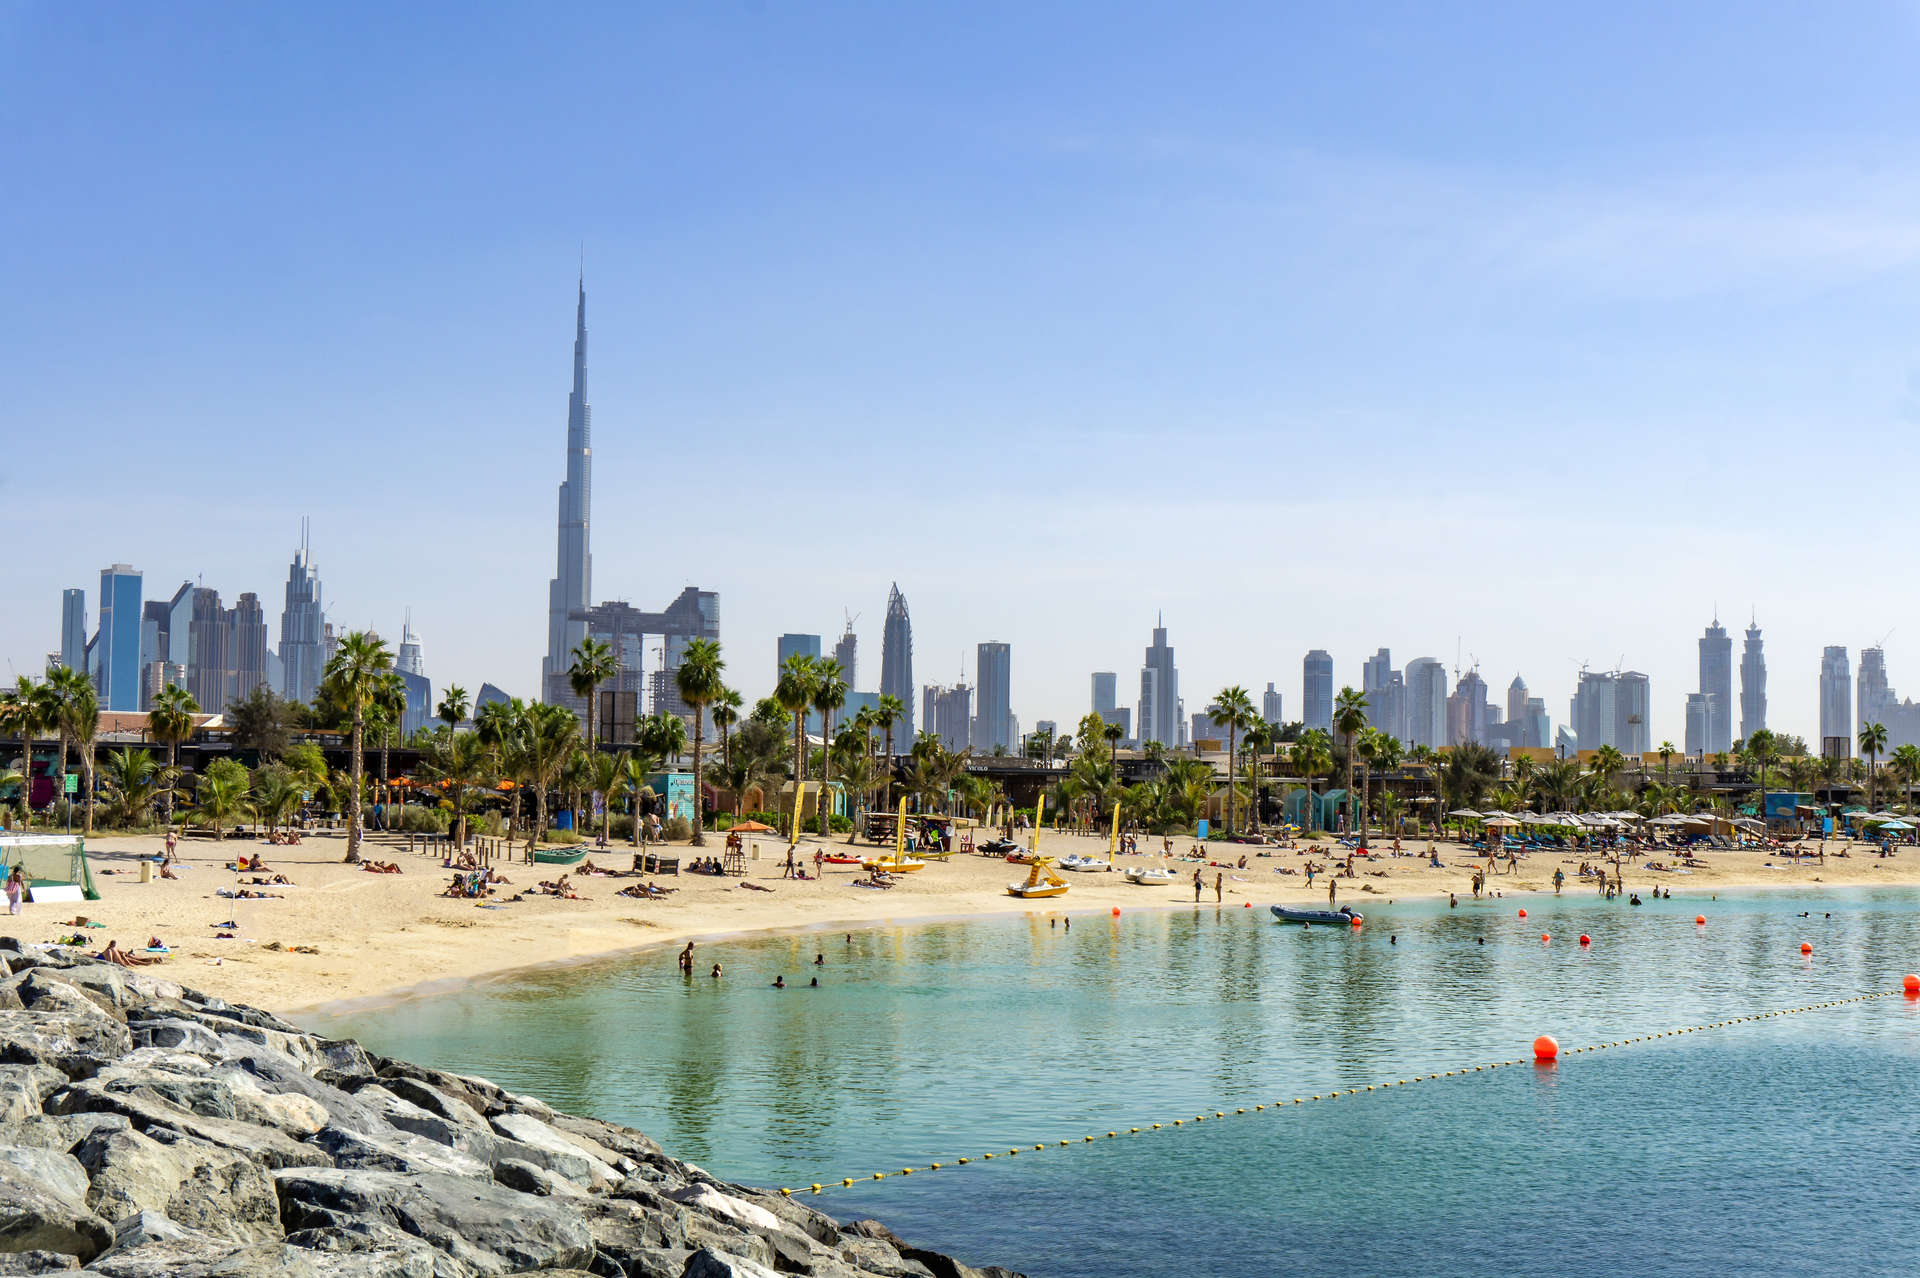 بين شهري نوفمبر وإبريل،ترحب بك شواطئ دبي الذهبية الرائعة